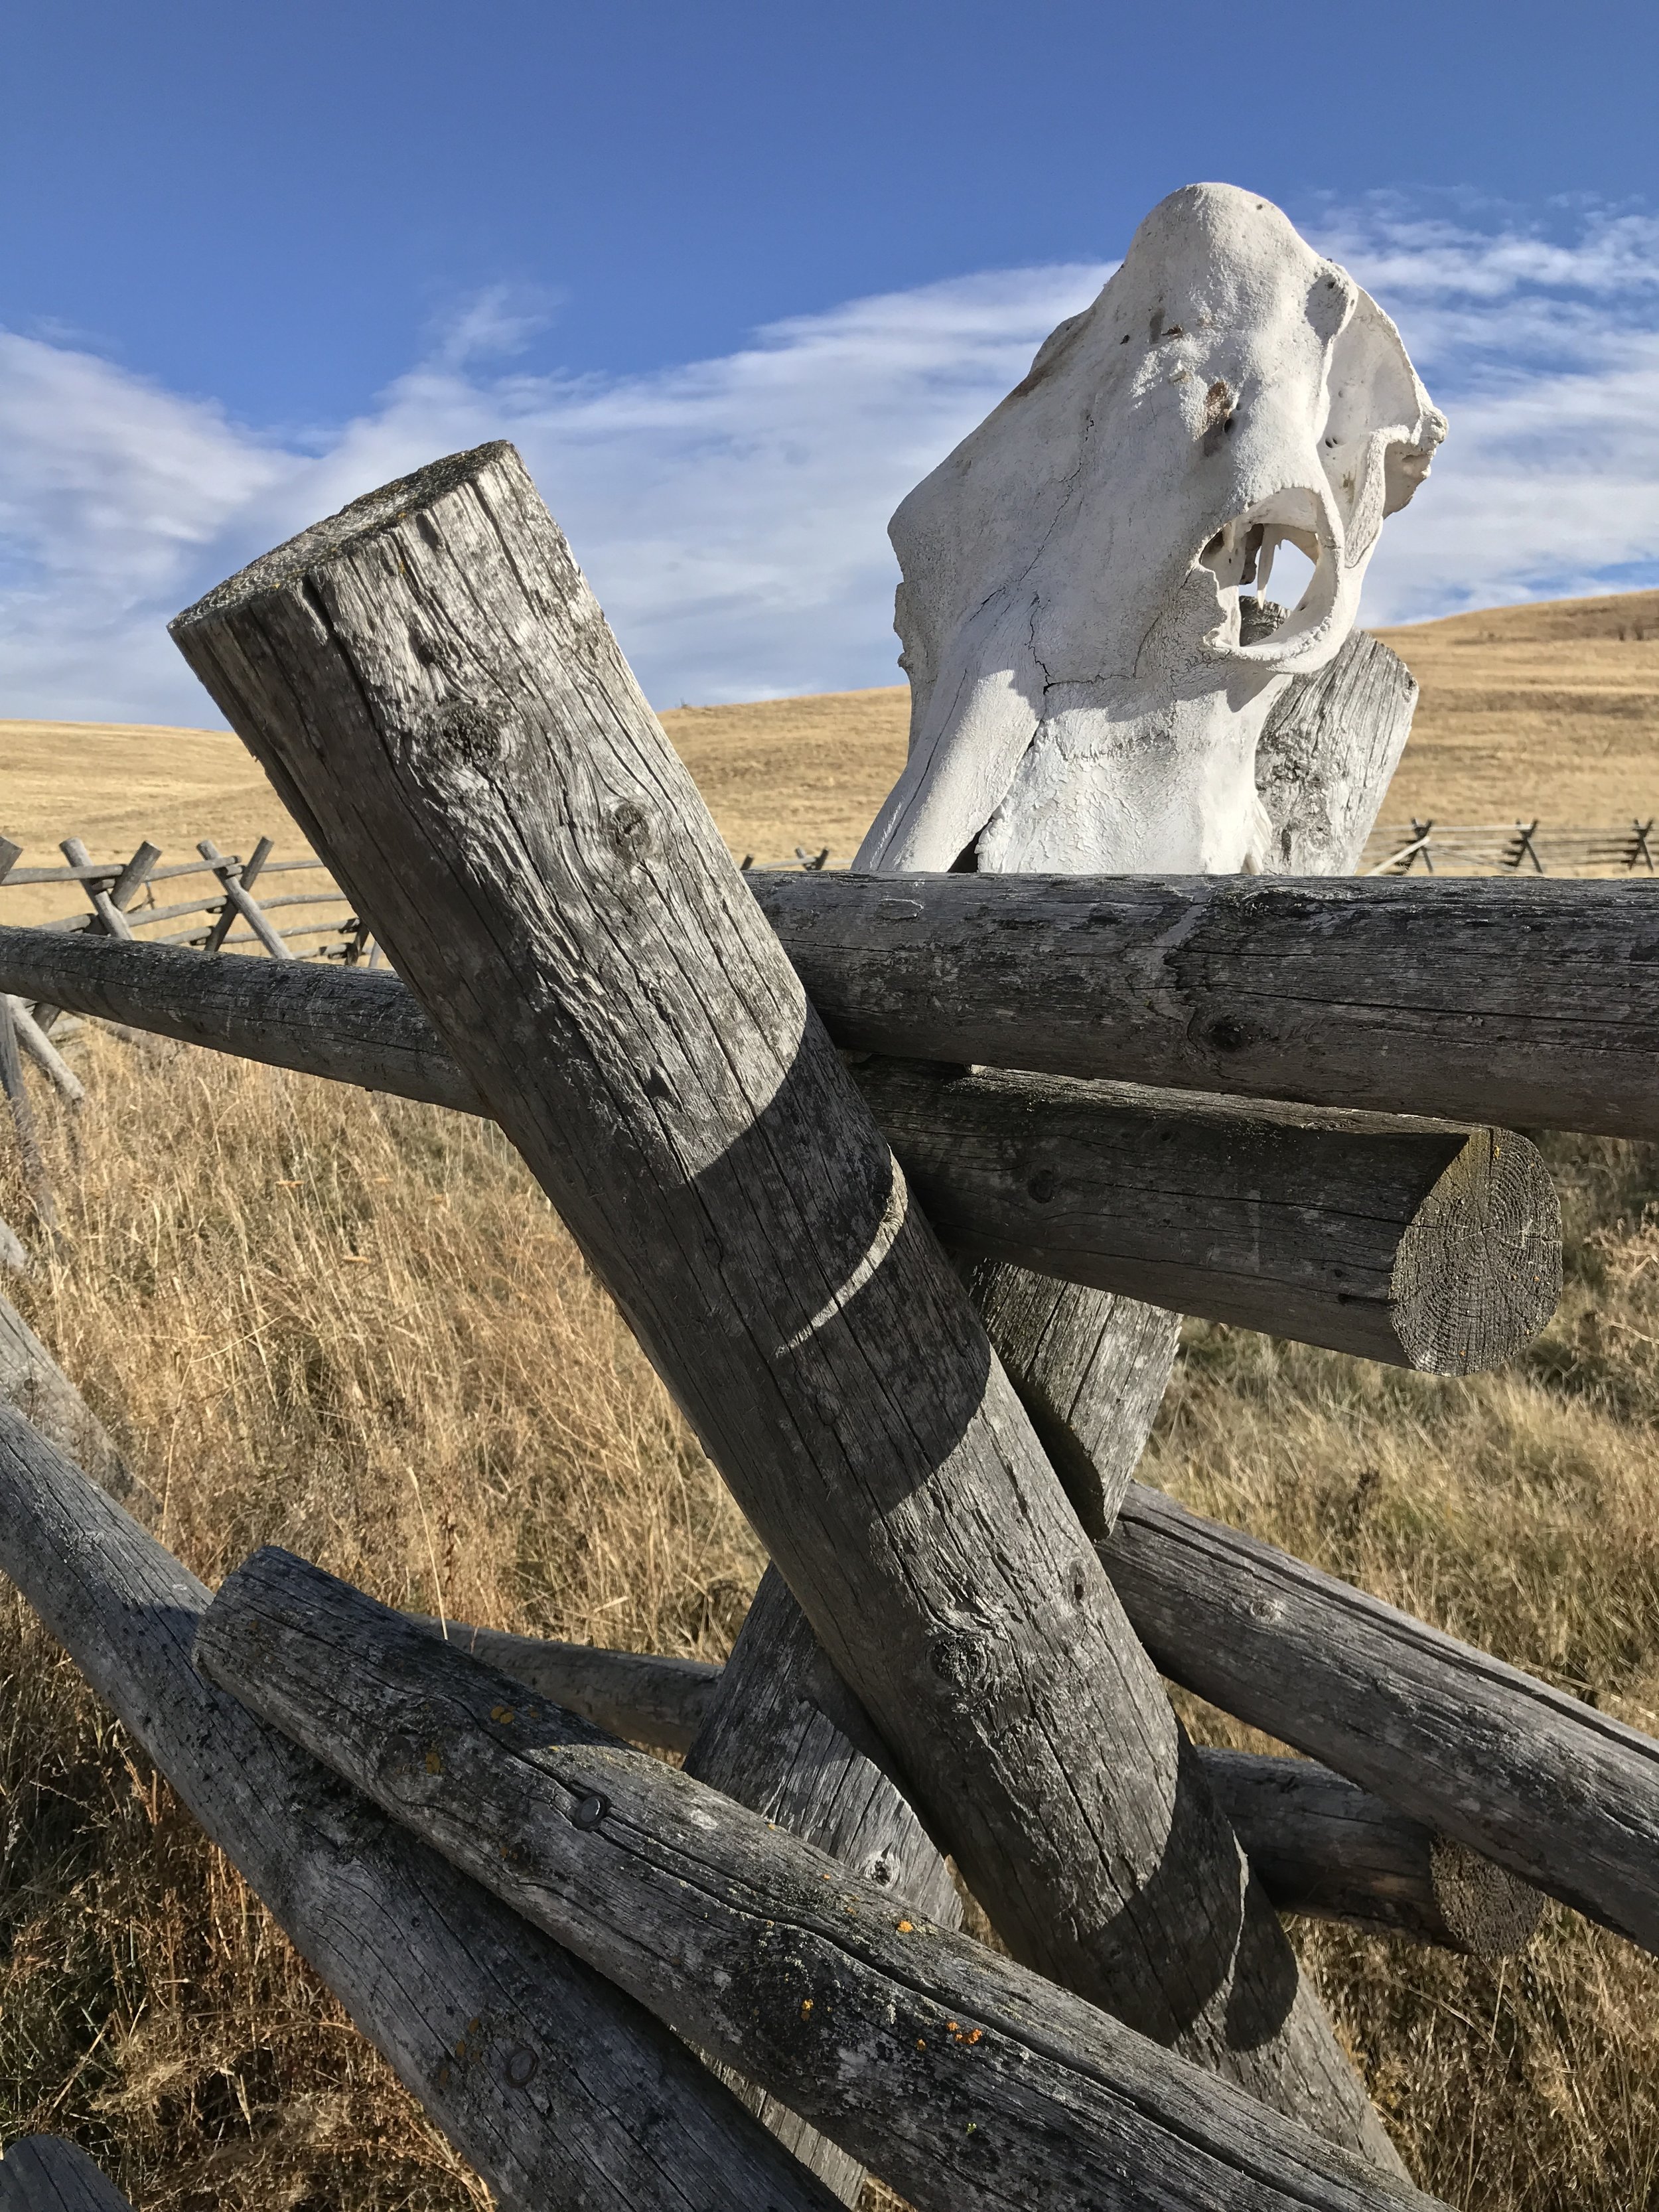 我的星期三小插图:牛头骨，三脚架围栏，朱姆沃尔特草原和俄勒冈州东部的天空。三张照片只*周三Vignette由Flutter &嗡嗡声。点击查看当天其他有趣的小插曲。